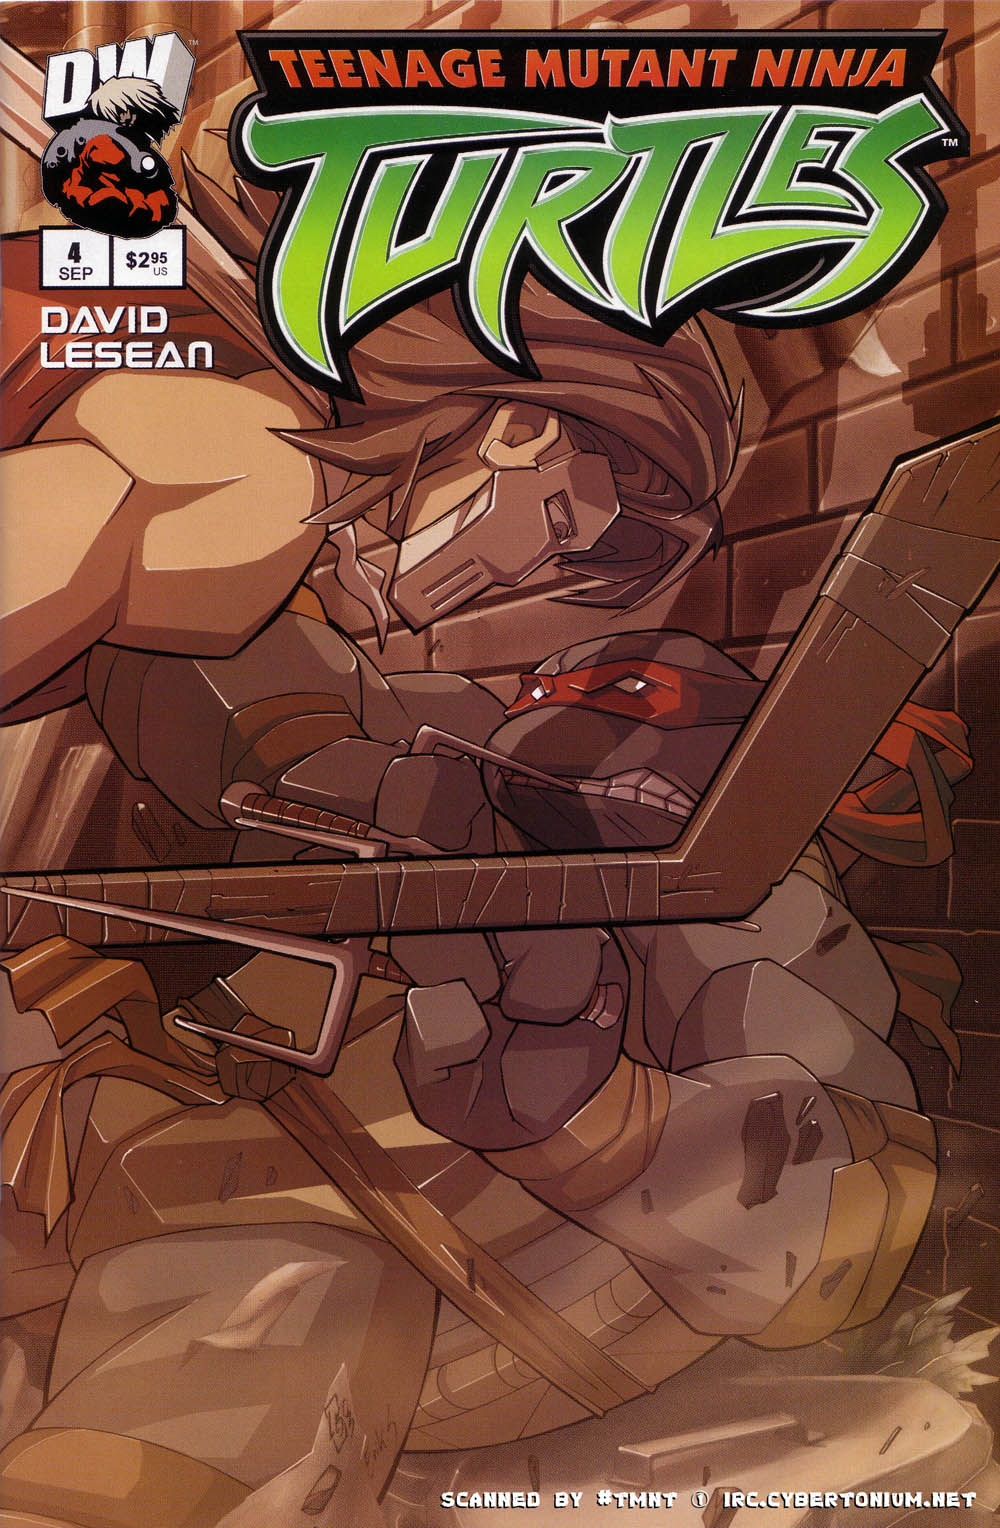 Teenage Mutant Ninja Turtles (2003) issue 4 - Page 1